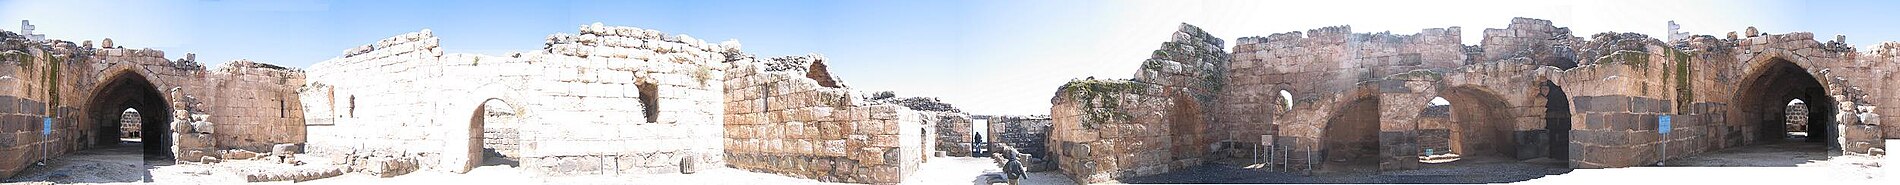 תמונה פנורמית (380°~) של החצר הפנימית. השער שבצידי התמונה הוא שער הכניסה למבצר הפנימי.